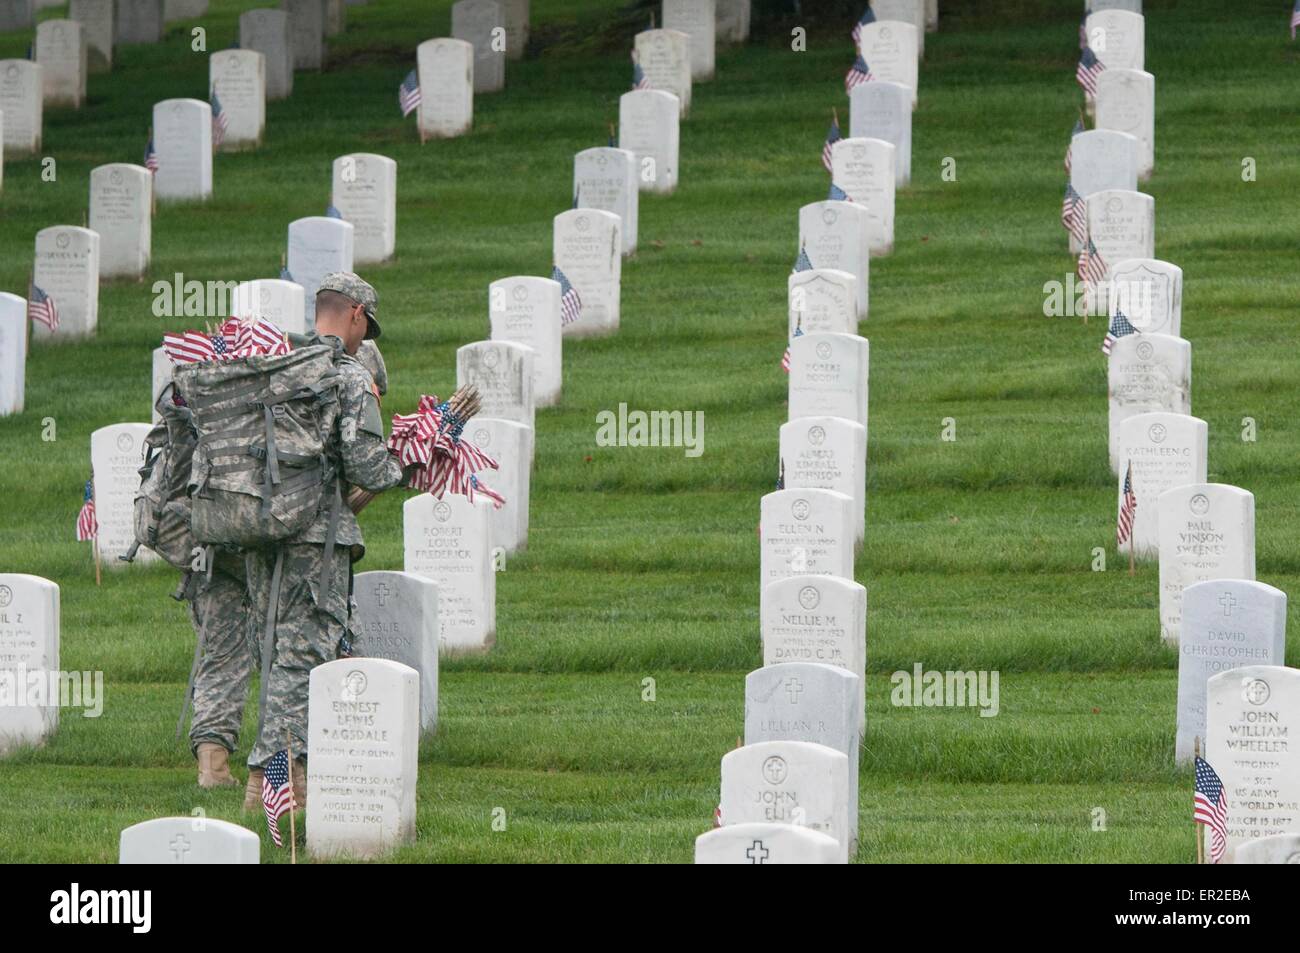 Un esercito americano soldato da la vecchia guardia bandiere posti nella parte anteriore della tomba di siti in onore del Memorial Day al Cimitero Nazionale di Arlington, Maggio 21, 2015 in Arlington, Virginia. La vecchia guardia ha condotto le bandiere, quando una bandiera americana è collocato in corrispondenza di ogni lapide, dal 1948. Foto Stock